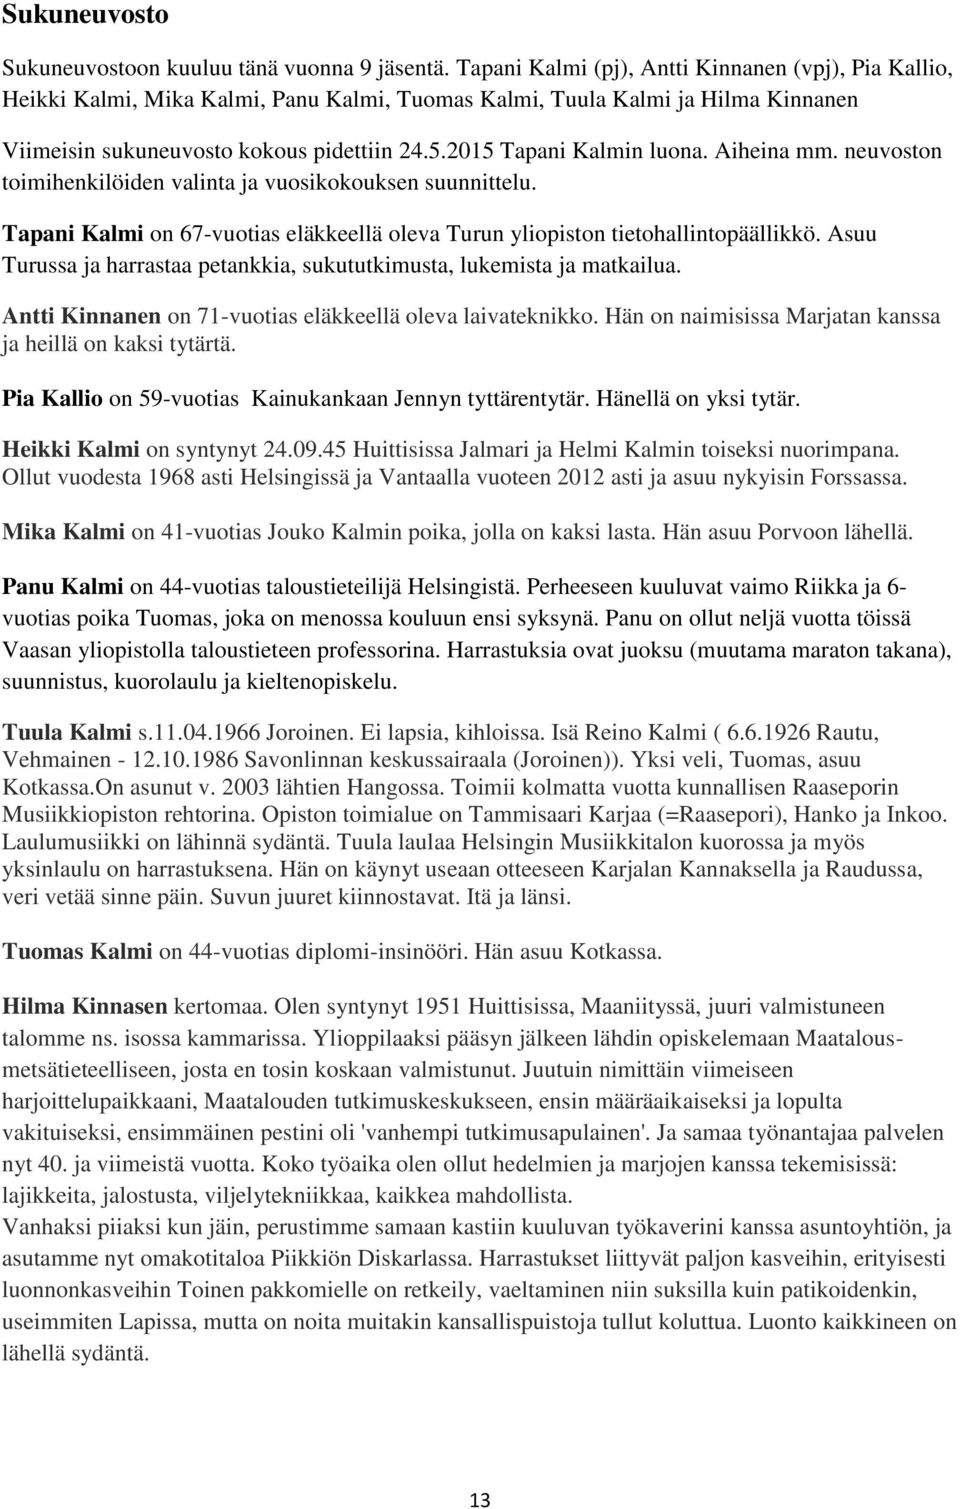 2015 Tapani Kalmin luona. Aiheina mm. neuvoston toimihenkilöiden valinta ja vuosikokouksen suunnittelu. Tapani Kalmi on 67-vuotias eläkkeellä oleva Turun yliopiston tietohallintopäällikkö.